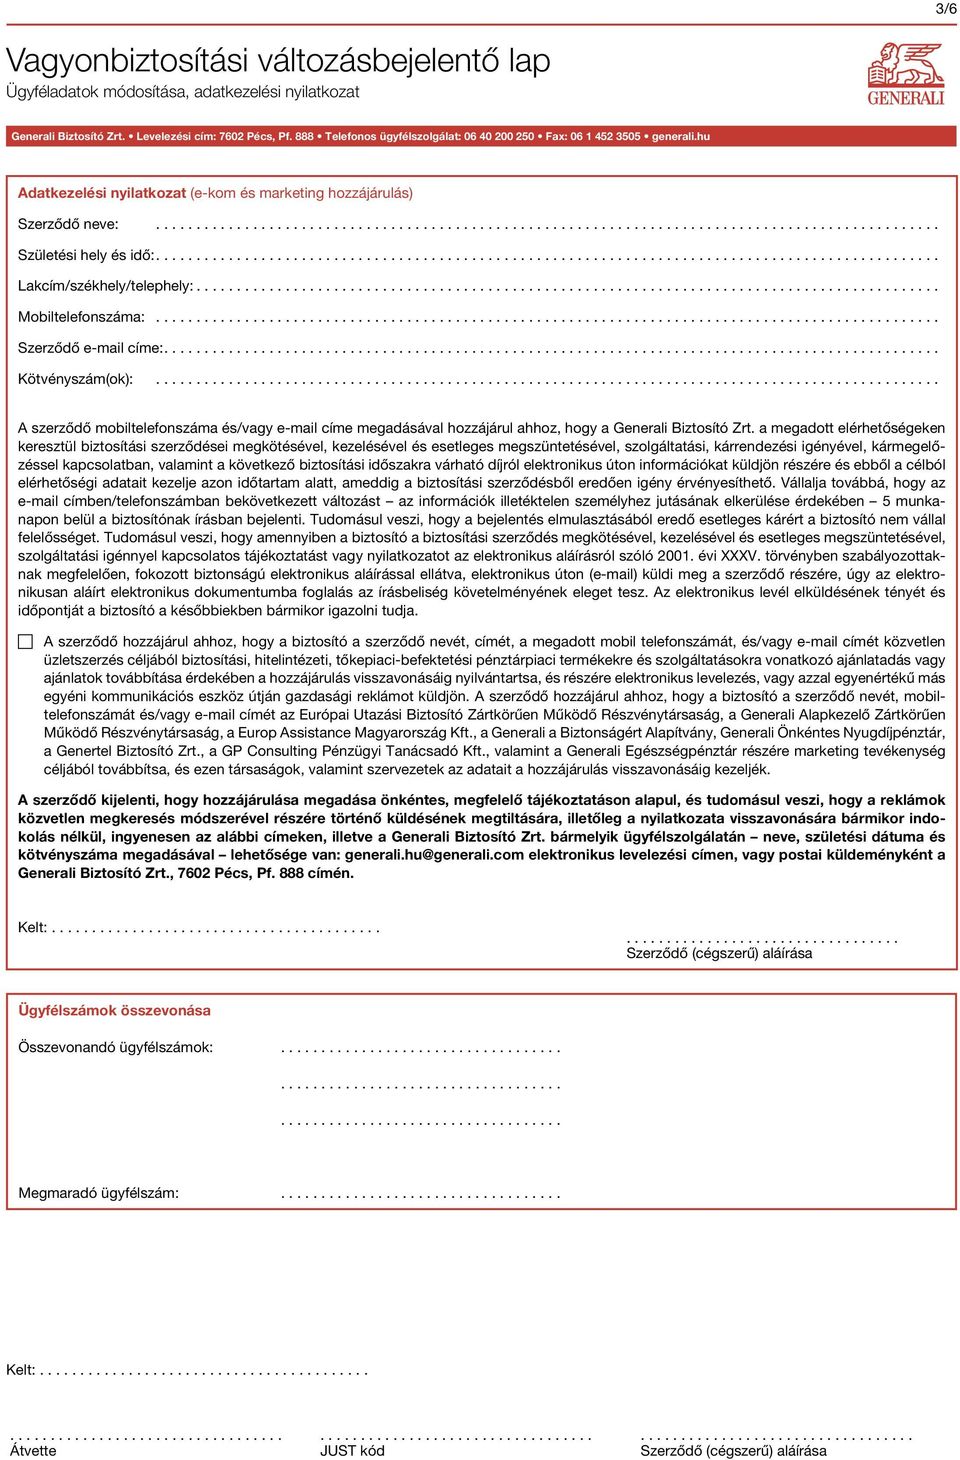 Vagyonbiztosítási változásbejelentő lap Ügyféladatok módosítása,  adatkezelési nyilatkozat - PDF Ingyenes letöltés